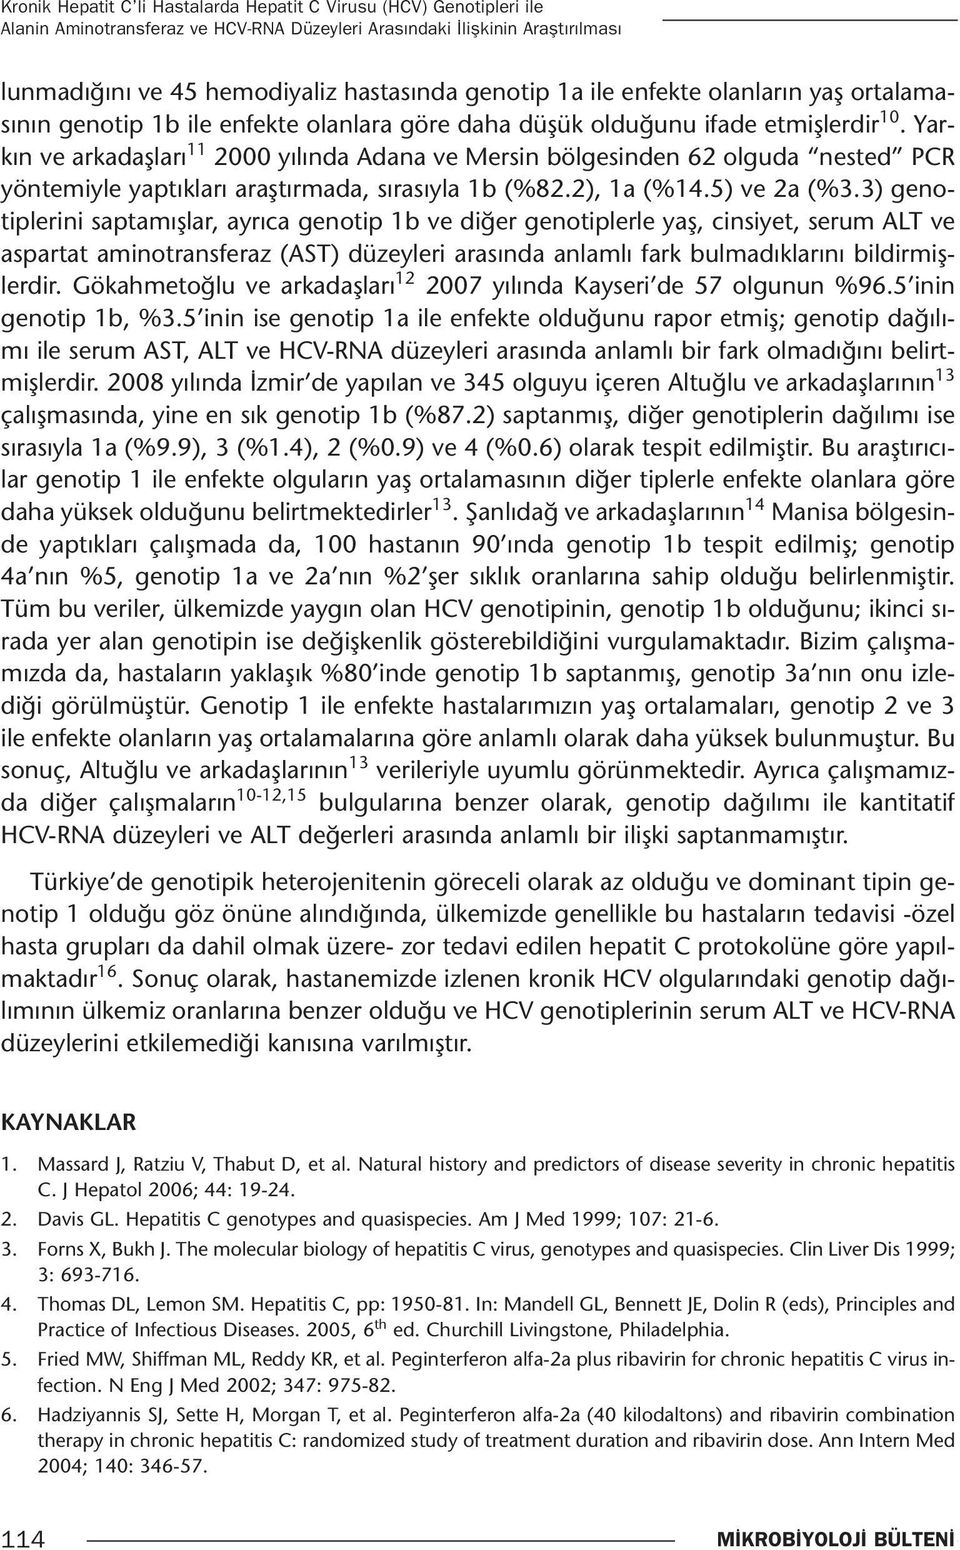 Yarkın ve arkadaşları 11 2000 yılında Adana ve Mersin bölgesinden 62 olguda nested PCR yöntemiyle yaptıkları araştırmada, sırasıyla 1b (%82.2), 1a (%14.5) ve 2a (%3.